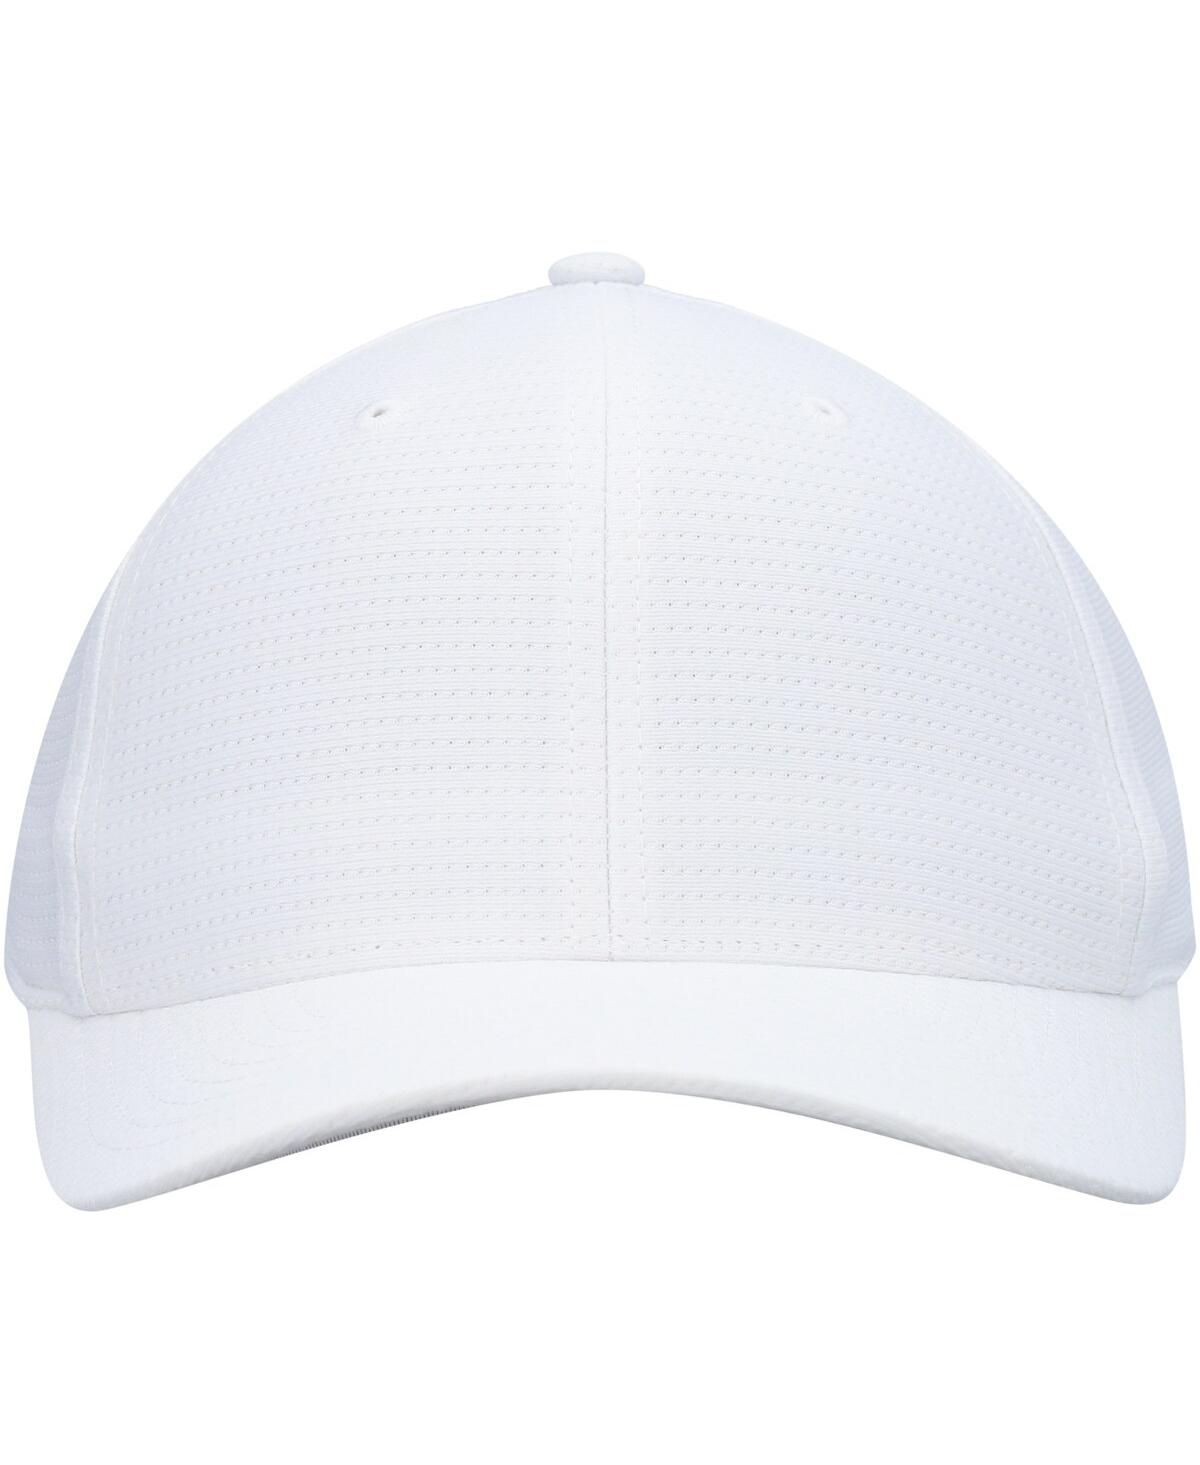 Shop Travis Mathew Men's  White Nassau Flex Hat